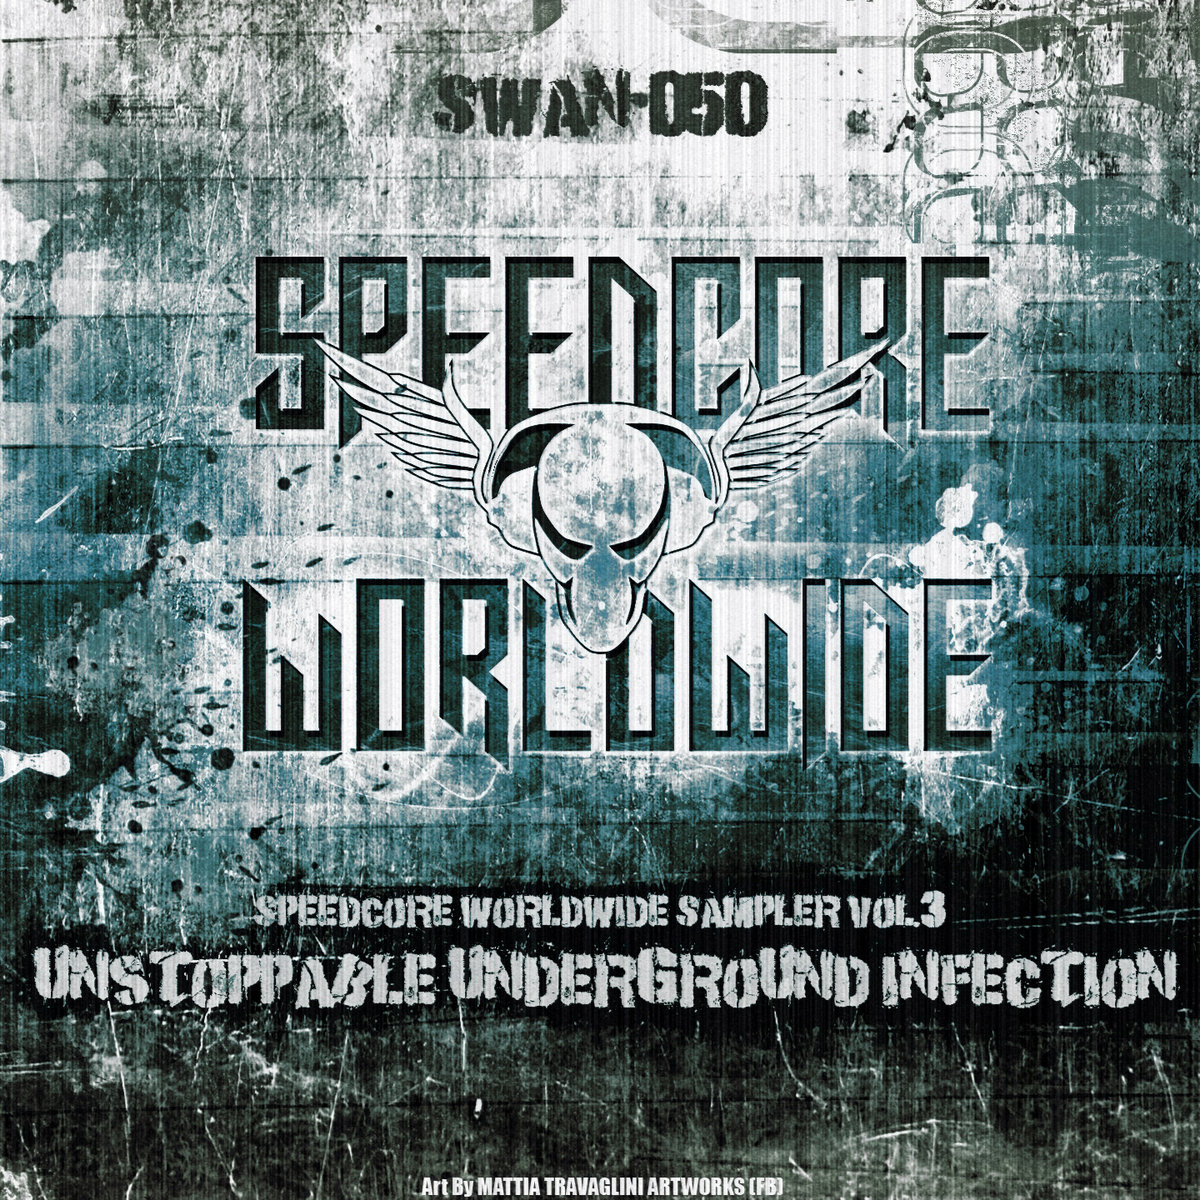 VA - Speedcore Worldwide Sampler Vol.3 ᵘᶰˢᵗᵒᵖᵖᵃᵇˡᵉ ᵘᶰᵈᵉʳᵍʳᵒᵘᶰᵈ ᶤᶰᶠᵉᶜᵗᶤᵒᶰ [SWAN-050]